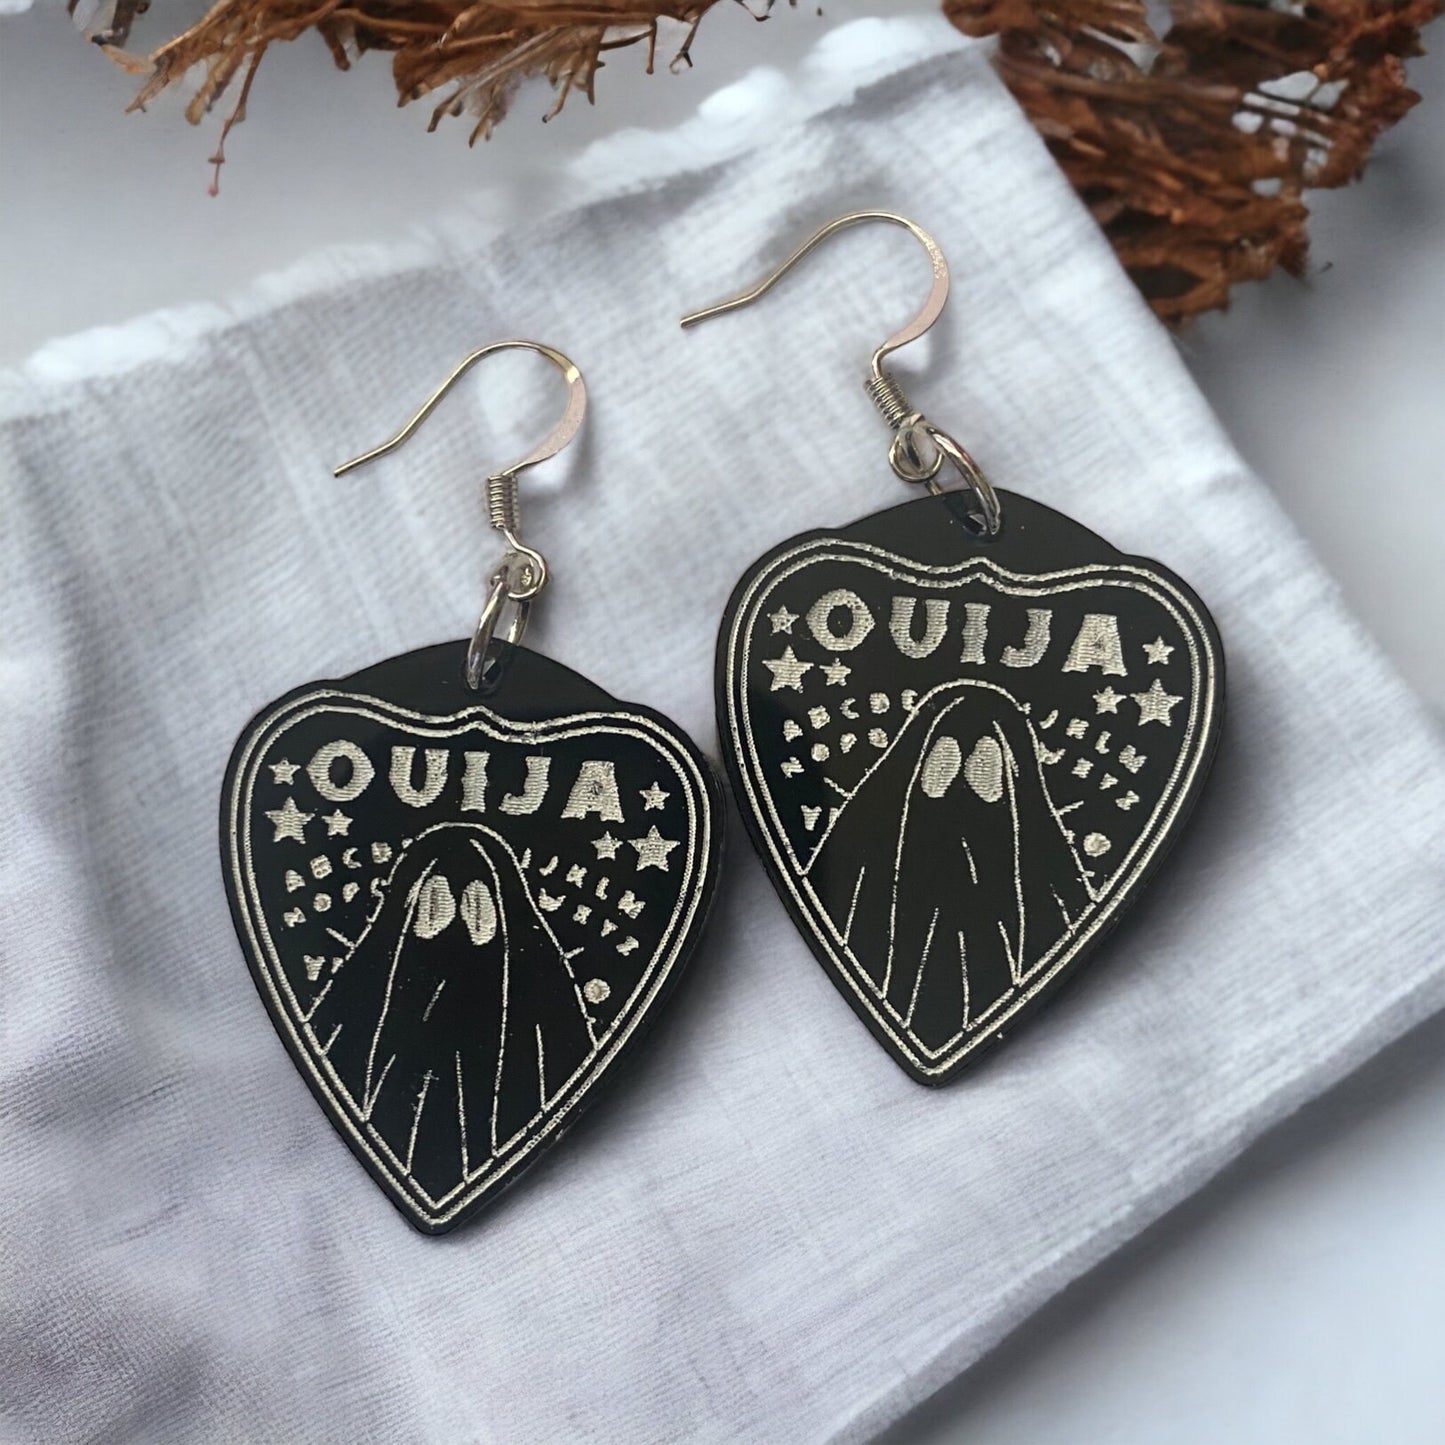 Ouija Board Ghost Planchette Earrings : Spirit Board Jewelry - Halloween Earrings - Talking Boards - Ghosties - Spooky Season - Code Orange